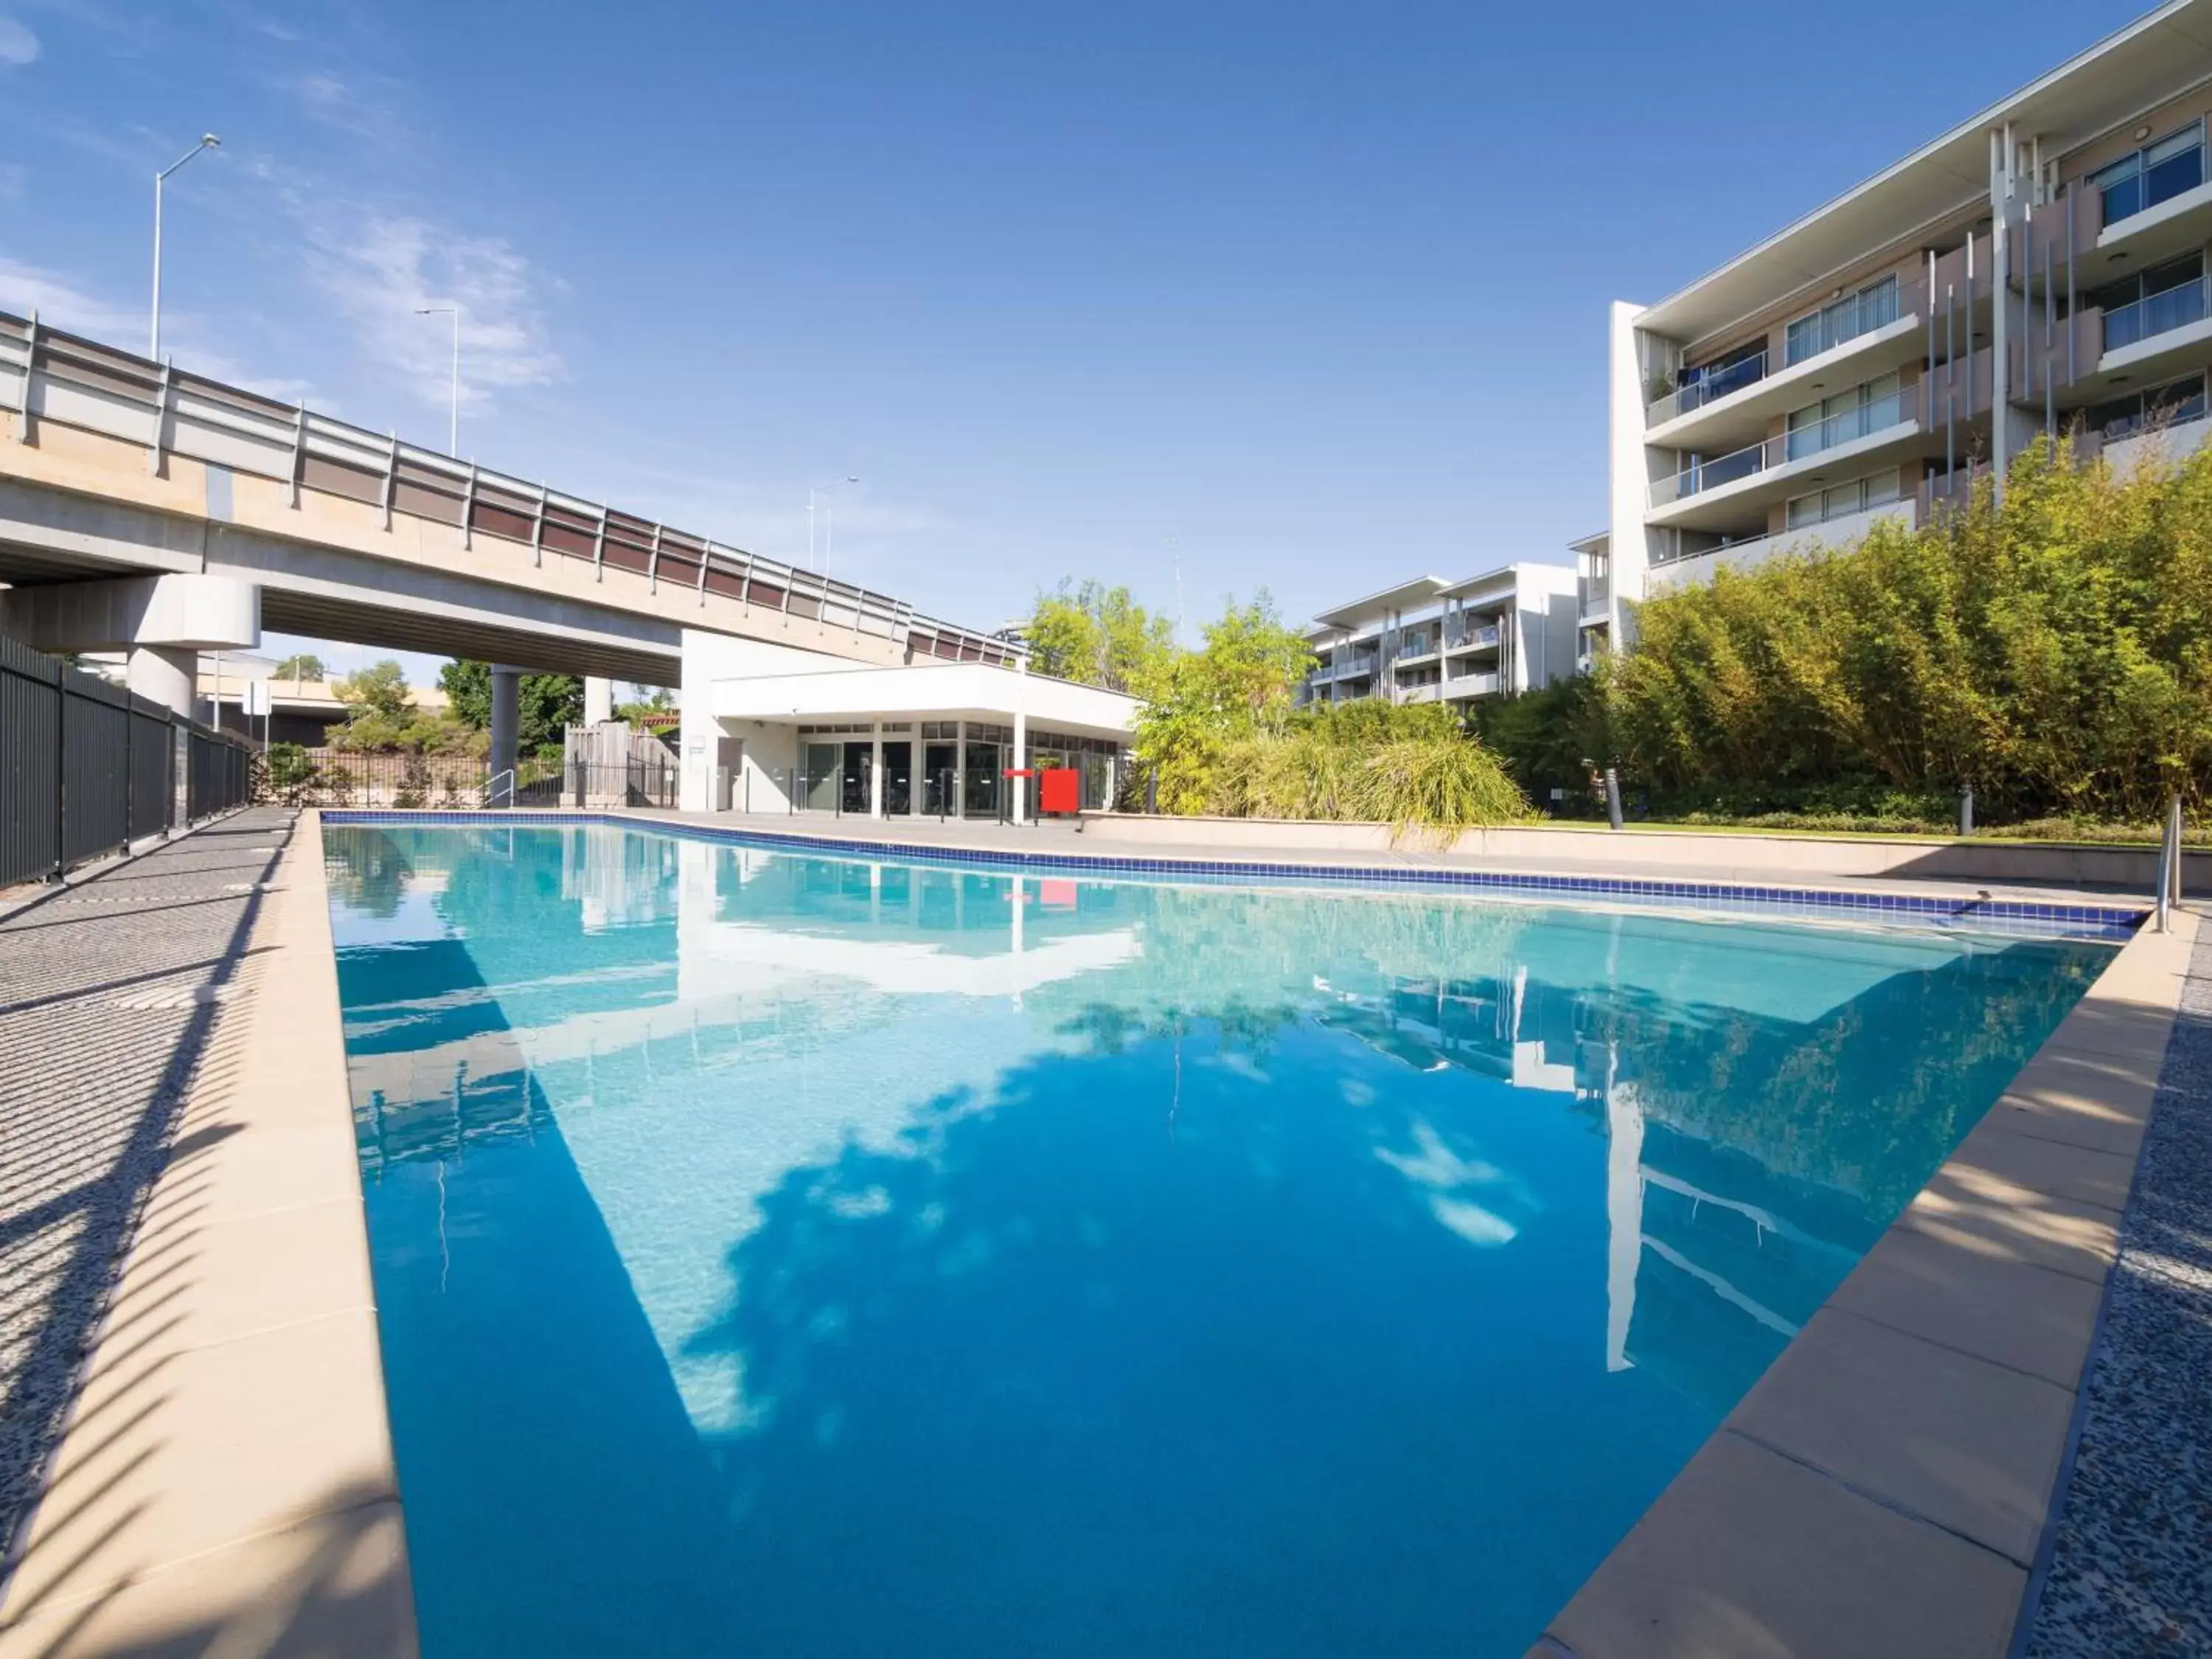 Swimming Pool in Oaks Brisbane Mews Suites